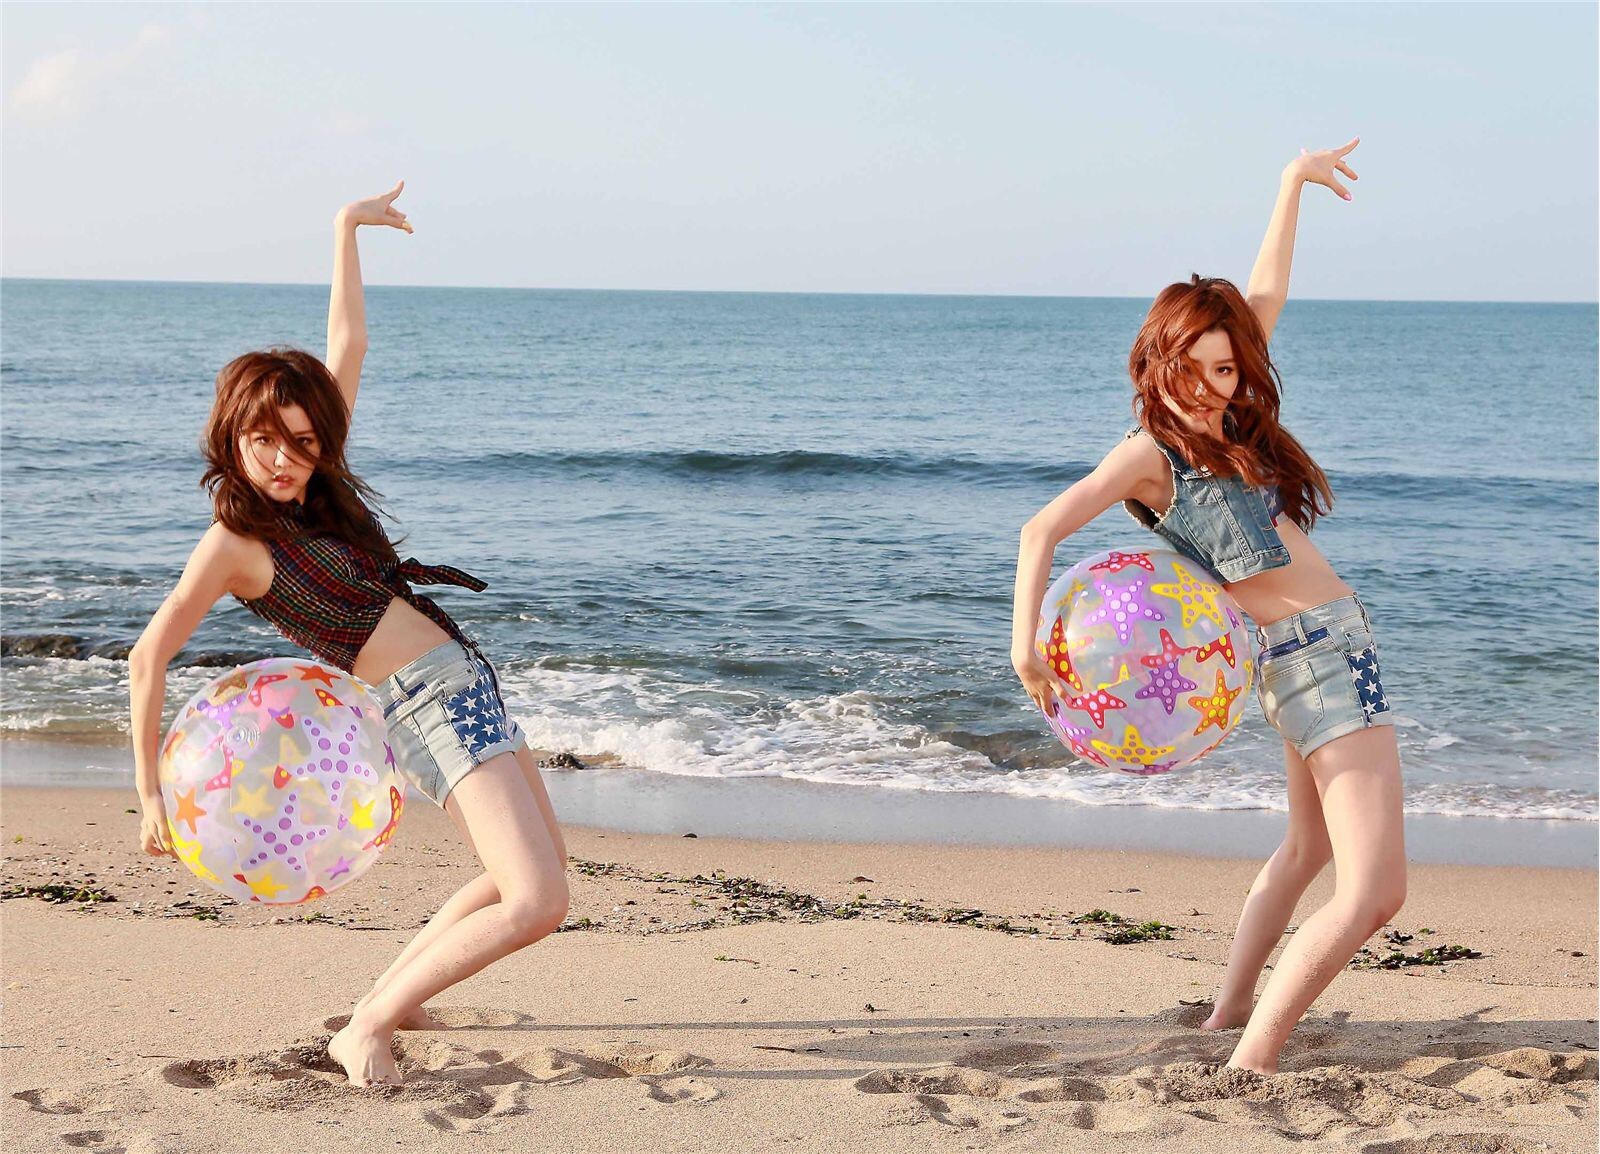 性感可爱的“白”氏双胞胎女子演唱组合BY2 - Miko (白纬芬) & Yumi(白纬玲) 写真套图